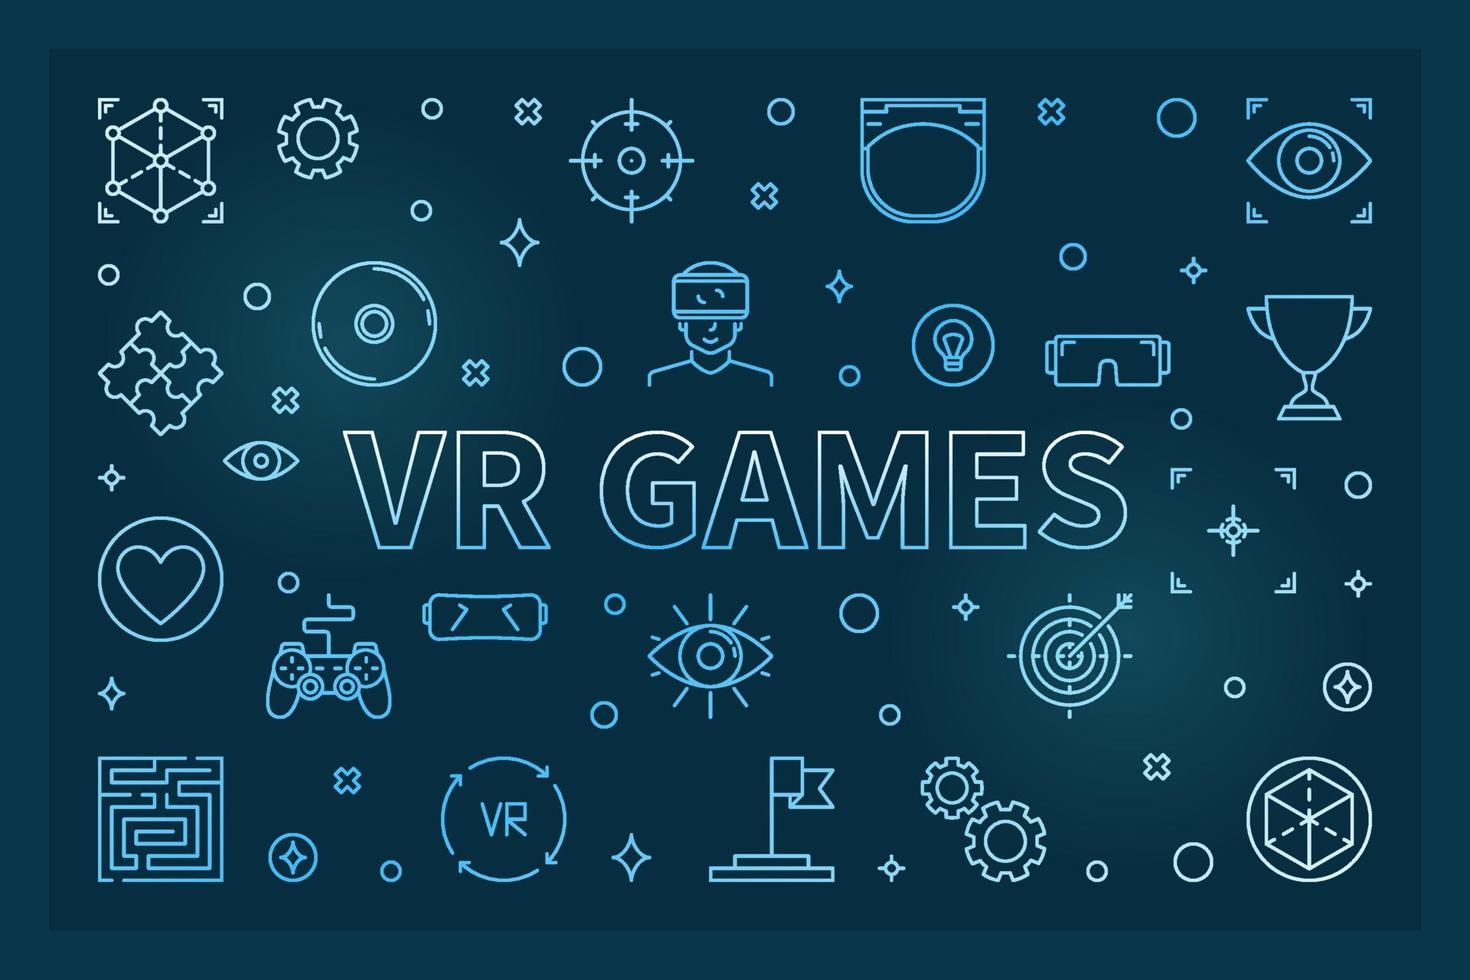 VR Games blue outline illustration. Vector creative banner